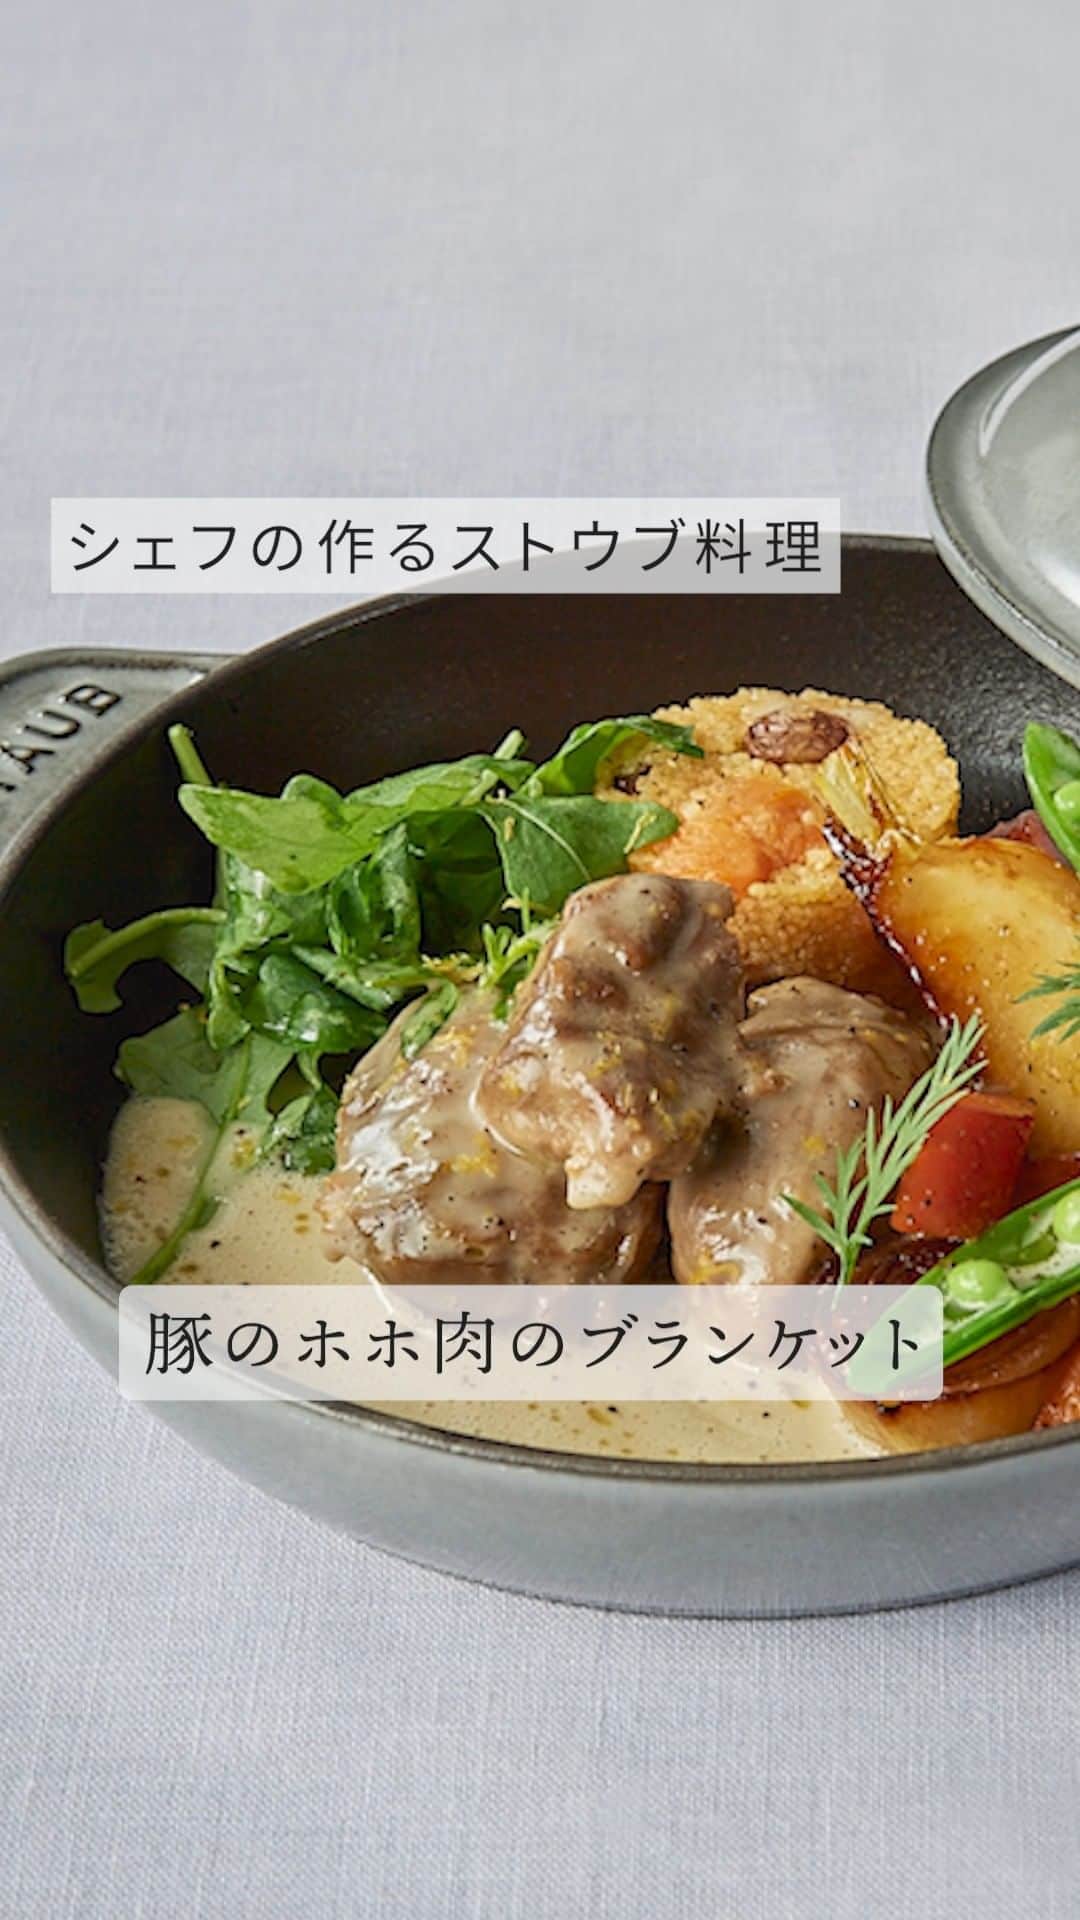 staub ストウブのインスタグラム：「【シェフの作るストウブ料理 : 豚のほほ肉のブランケット＆クスクスとドライフルーツのプティガットー仕立て 季節の野菜のサフラン風味】 ストウブを使ったプロのスペシャリテを味わえるレストランをご紹介する「シェフの作るストウブ料理」。今回ご紹介するのは、東京 神楽坂「 ルグドゥノム・ブション・リヨネ( @lugdunum_bouchon_lyonnais)」が提供する「豚のほほ肉のブランケット＆クスクスとドライフルーツのプティガットー仕立て 季節の野菜のサフラン風味」。  7/8 (土) ~ 8/6(日)までの期間限定で、「 STAUB インスタを見ました」と来店時にお伝え頂いた方限定で、今回ご紹介したお料理が頼めるそう*。ぜひお店に足を運んでみてはいかがでしょうか。  * ランチ：3300円（平日のみ）/4950円/7500円 ディナー：5500円/7500円/11000円 のコースにてオーダー可能となります。 詳細は来店時にお尋ねくださいませ。  - 美味しさのポイント 豚ほほ肉はストウブで3時間ほどアクを取りながら煮込んでおきます。柔らかくなったほほ肉と煮汁に分けて、お肉を冷まします。煮汁にはブランマニエ**を混ぜ合わせて煮詰めたら、生クリーム、レモンの皮とタイムを入れ、香りを移して、ソースを完成させます。  ホットプレートに玉ねぎ、人参、セロリ、かぶをしきつめて塩・胡椒・ハチミツをかけます。風味付けにサフラン、にんにく、タイムを入れてオリーブオイルで焼き色がつくまでグリルします。ブイヨンを注ぎ入れてデグラッセ***してから、蓋をして野菜のうま味を閉じ込めます。その間に、ココットにソースと1人分のホホ肉を入れて、弱火で味をしみ込ませます。  ホットプレートにほほ肉とグリルした野菜、タブレを盛りつけます。ハンドミキサーでムース状にしたソースをかけて、レモンの皮とオリーブオイルをかけ、ホットプレートの蓋をして完成！ストウブは保温性が優れているので、お客さまの前で蓋を開ければいつでもできたての温かいお料理をお出しできるのが魅力です。  **ブランマニエ：とろみをつけるためにバターと小麦粉を混ぜ合わせたもの ***デグラッセ : 鍋底にある旨味やこげを液体で煮溶かすこと。  - ストウブの気に入っているポイント ストウブに出会ったのは35年前、ル・コルドンブルーのスクール時代に遡ります。来日後も、ホテルソフィテル東京＊で使用していましたね。現在は盛りつけ用としてもミニココットが活躍していますよ。ちなみに私のお気に入りは、ナス色のオーバルココットです。  家でもストウブを愛用していますが、その理由は家庭料理がレストランのような出来栄えになるから。厚みのあるお肉のローストや煮込みはストウブを使えば簡単に調理ができます。夏になると、よくラタトゥイユも作ります。値段がお手頃な食材を使用しても味わいが安定するので重宝しています。鶏や豚のフリカッセもレストランで食べるようなクオリティーになりますよ！もちろん…最後の仕上げは腕の良さも重要になってきますけどね(笑）普通の鍋よりも厚みがあってコゲにくく、何より火加減の調節がしやすいストウブを使えば、誰でも美味しい料理を作ることができますよ。  ＊かつて台東区に存在した高層ホテル  - レストラン情報 日本で初めての「リヨン人によるブション＊＊」として知られる神楽坂の名店。食の都・リヨンの伝統的な料理を、現代の味わいへと昇華させた本格料理を堪能することができる。オーナーシェフのクリストフ・ポコ氏はルーアンの二ツ星レストラン「ジル」をはじめフランス内の数々のレストランで研鑽を積み、2000年から「ホテルソフィテル東京」の総料理長を務めた後、神楽坂に2007年に現在のお店を開業し、2011年から12年連続でミシュラン一つ星を獲得している。  ＊＊リヨンの郷土料理を提供する大衆食堂  - 住所 〒162-0825 東京都新宿区神楽坂４丁目３−７  - 電話番号 03-6426-1201  - URL http://www.lyondelyon.com/  #STAUB #ストウブ #神楽坂 #神楽坂ランチ #神楽坂ディナー #ブション」